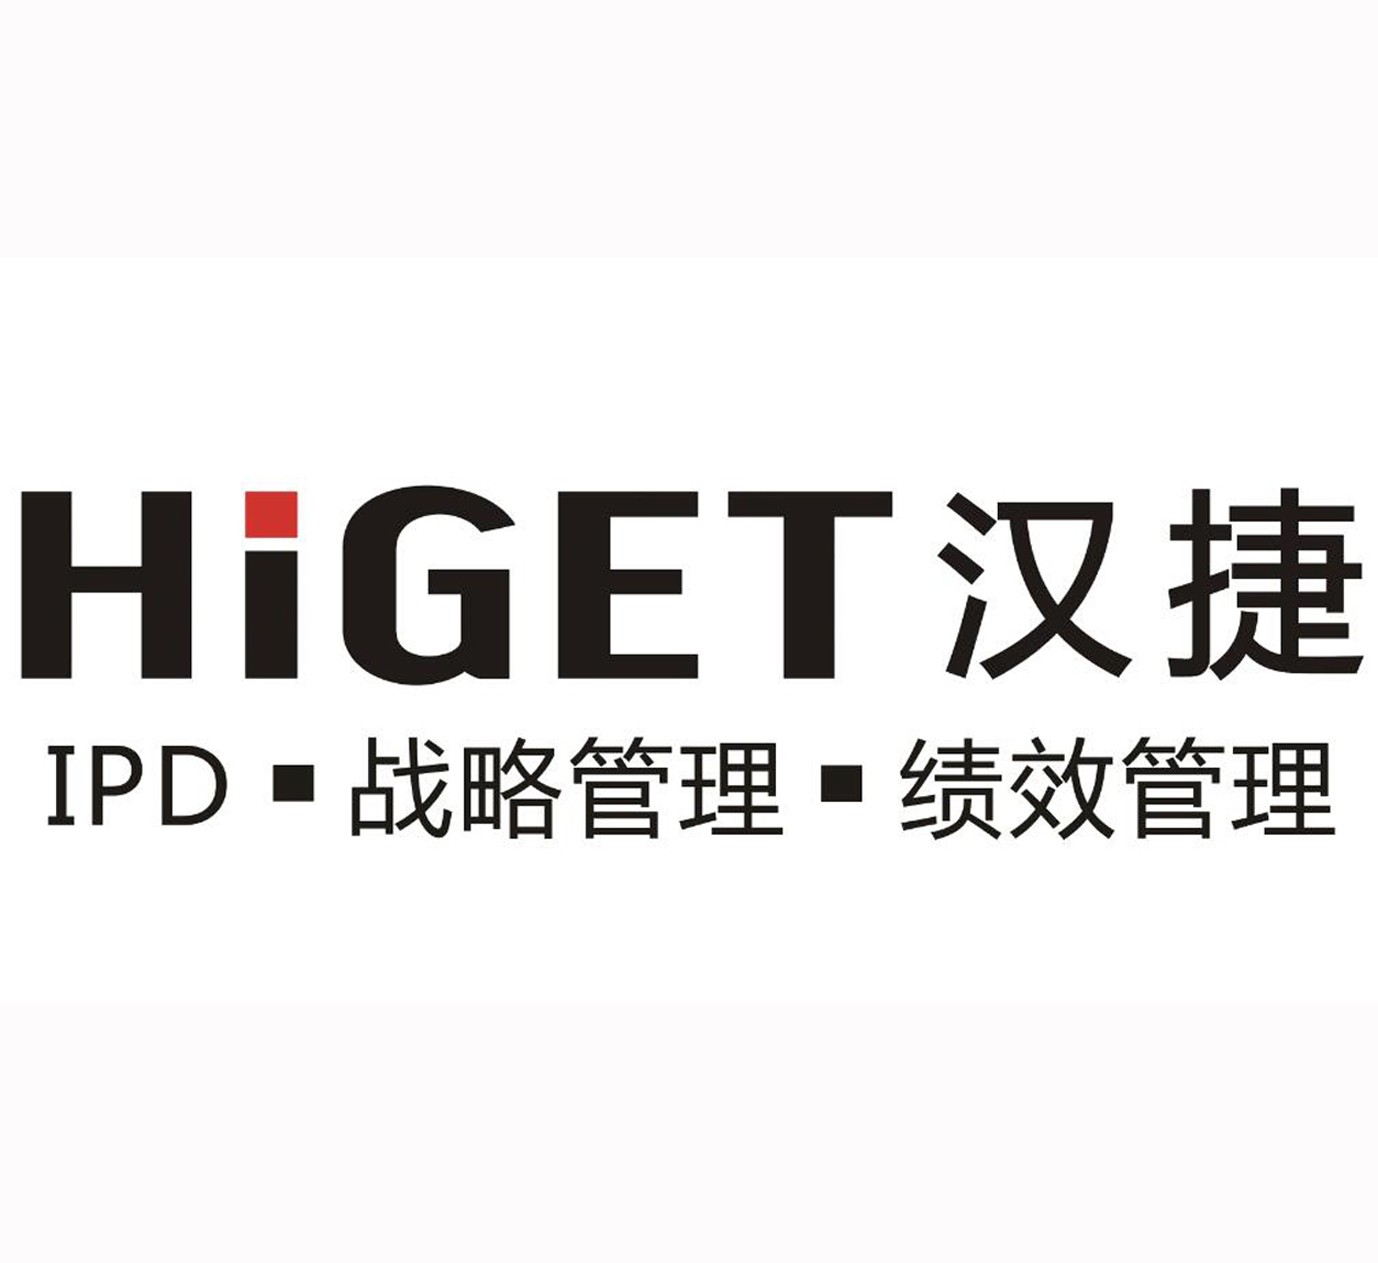 2020年9月12-13日汉捷咨询为北京某著名计算机研究院提供了(IPD-集成产品开发）培训